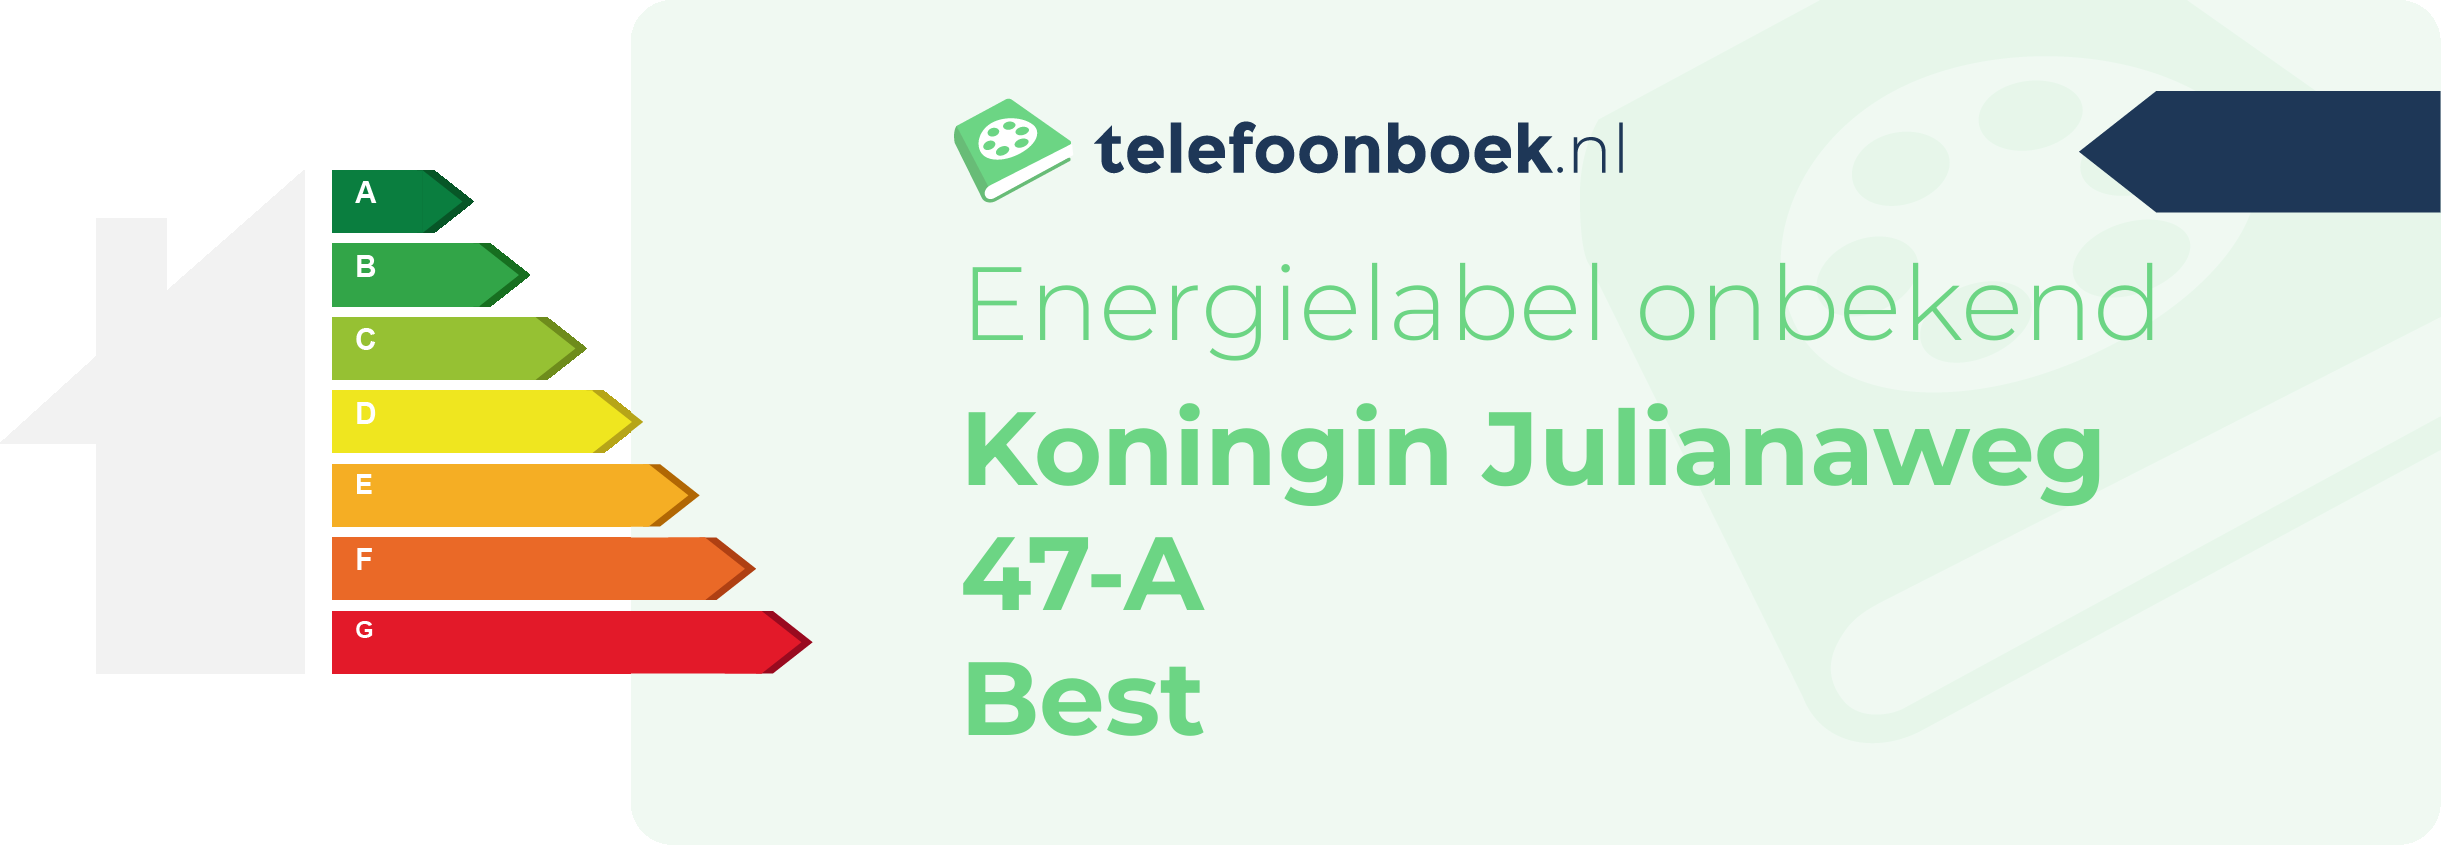 Energielabel Koningin Julianaweg 47-A Best